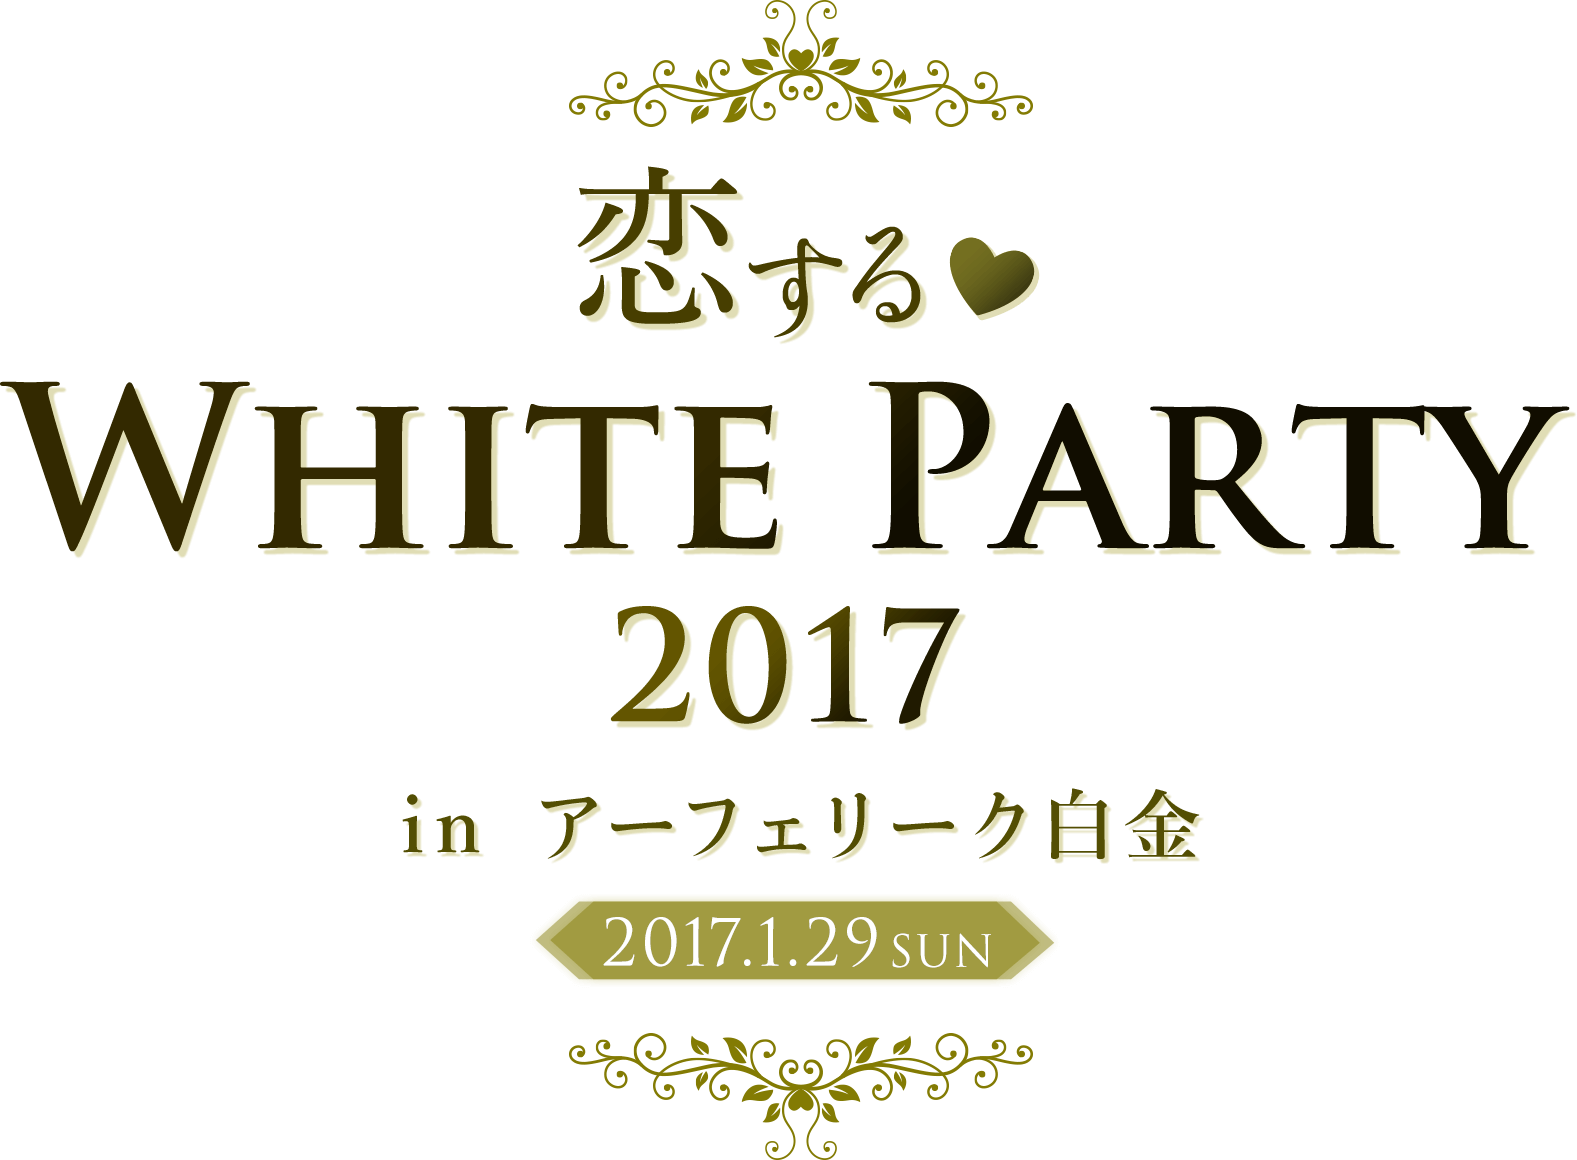 恋する♥WHITE  PARTY 2017 in アーフェリーク白金 2017.1.29 SUN